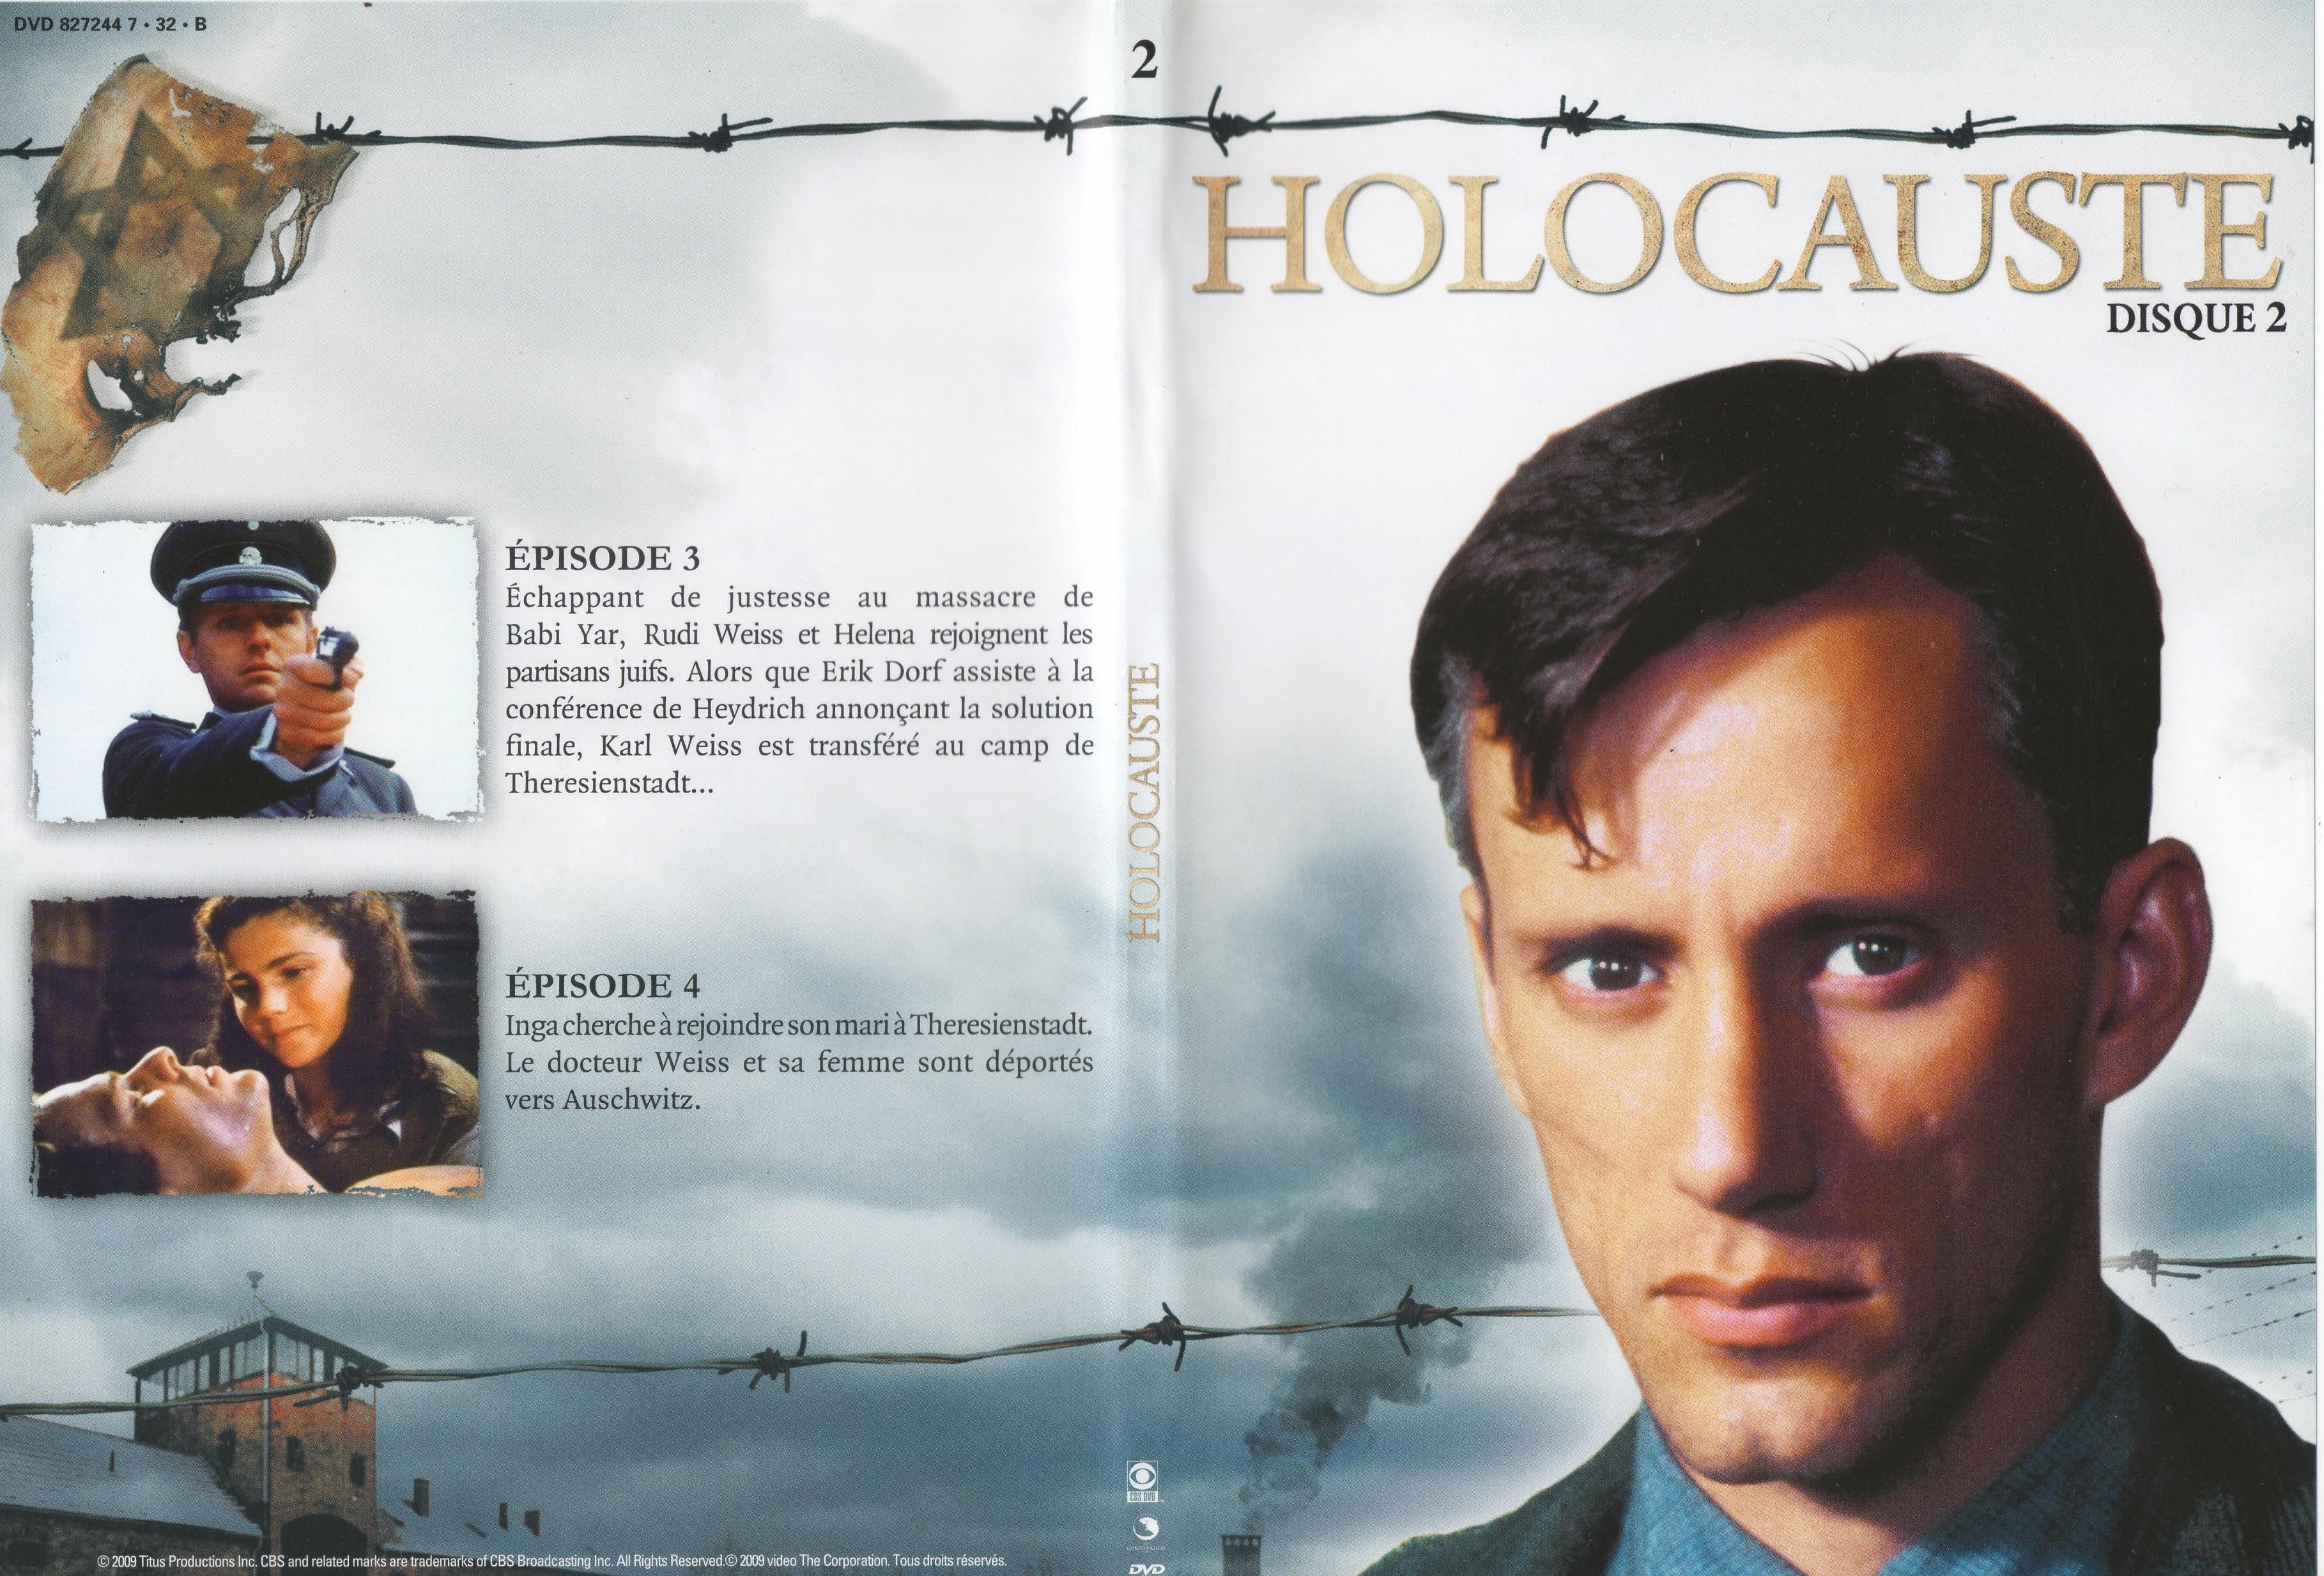 Jaquette DVD Holocauste DVD 2 v2